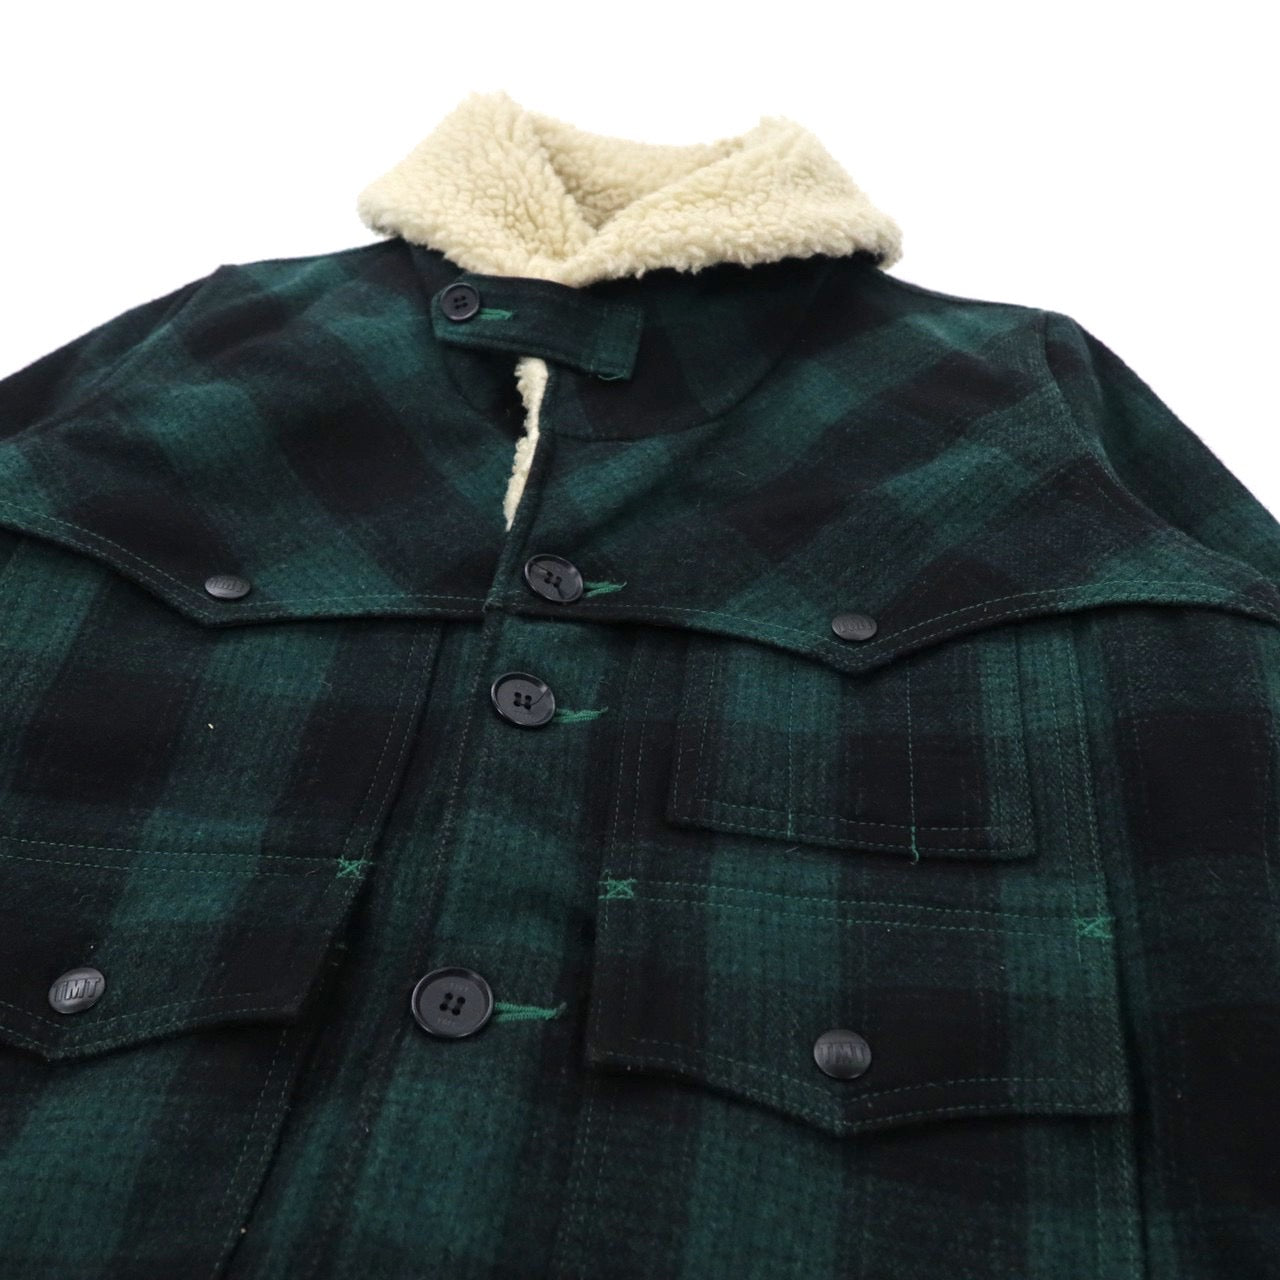 TMT Gang Coat BOA Ranch Coat M Green CHECKED Wool TJK-F1306 Japan MADE